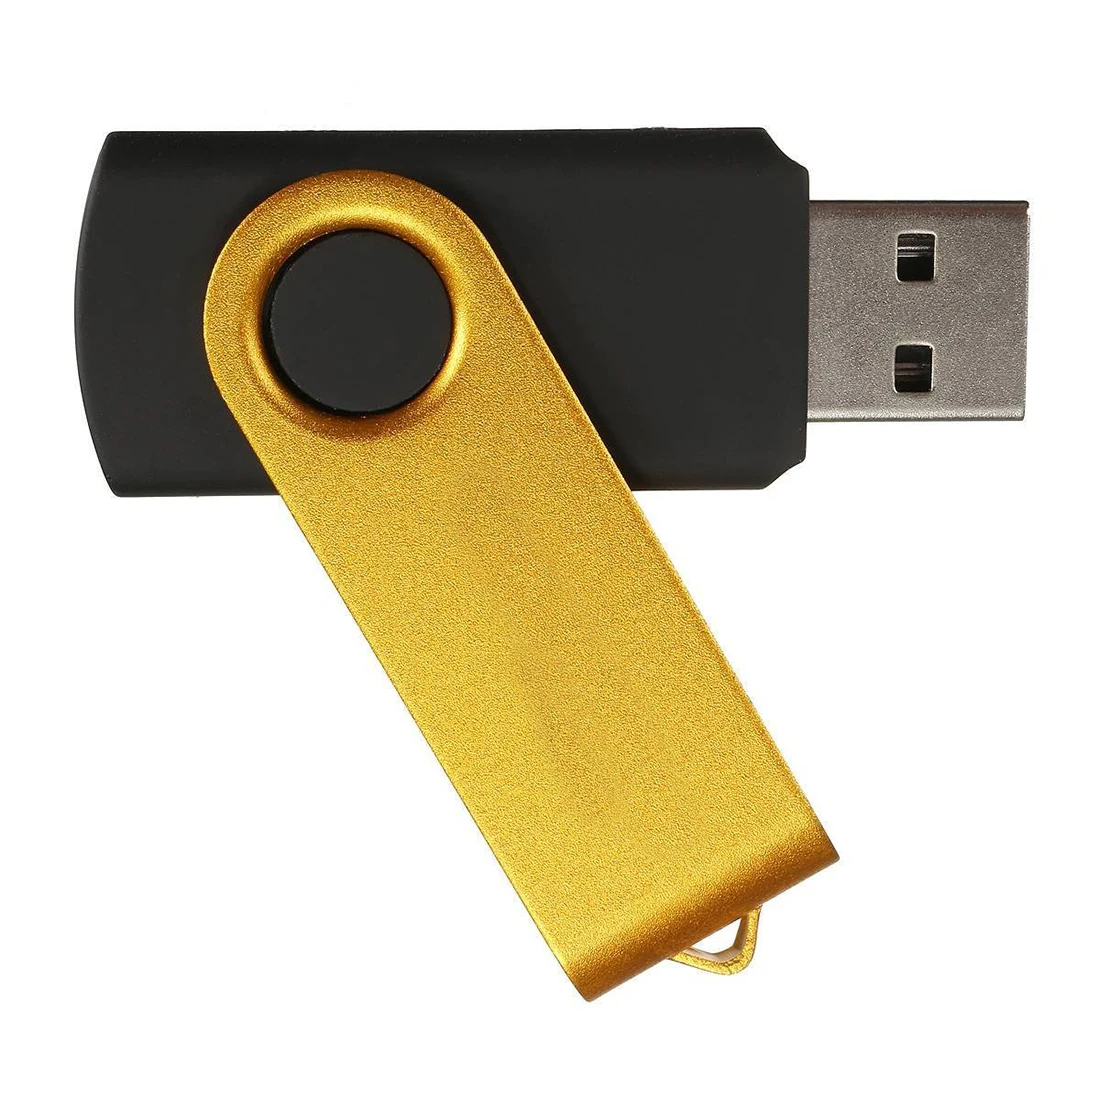 Фото USB Memory 3.0 32GB Stick Flash Drive Rotating Data Gift Gold | Компьютеры и офис